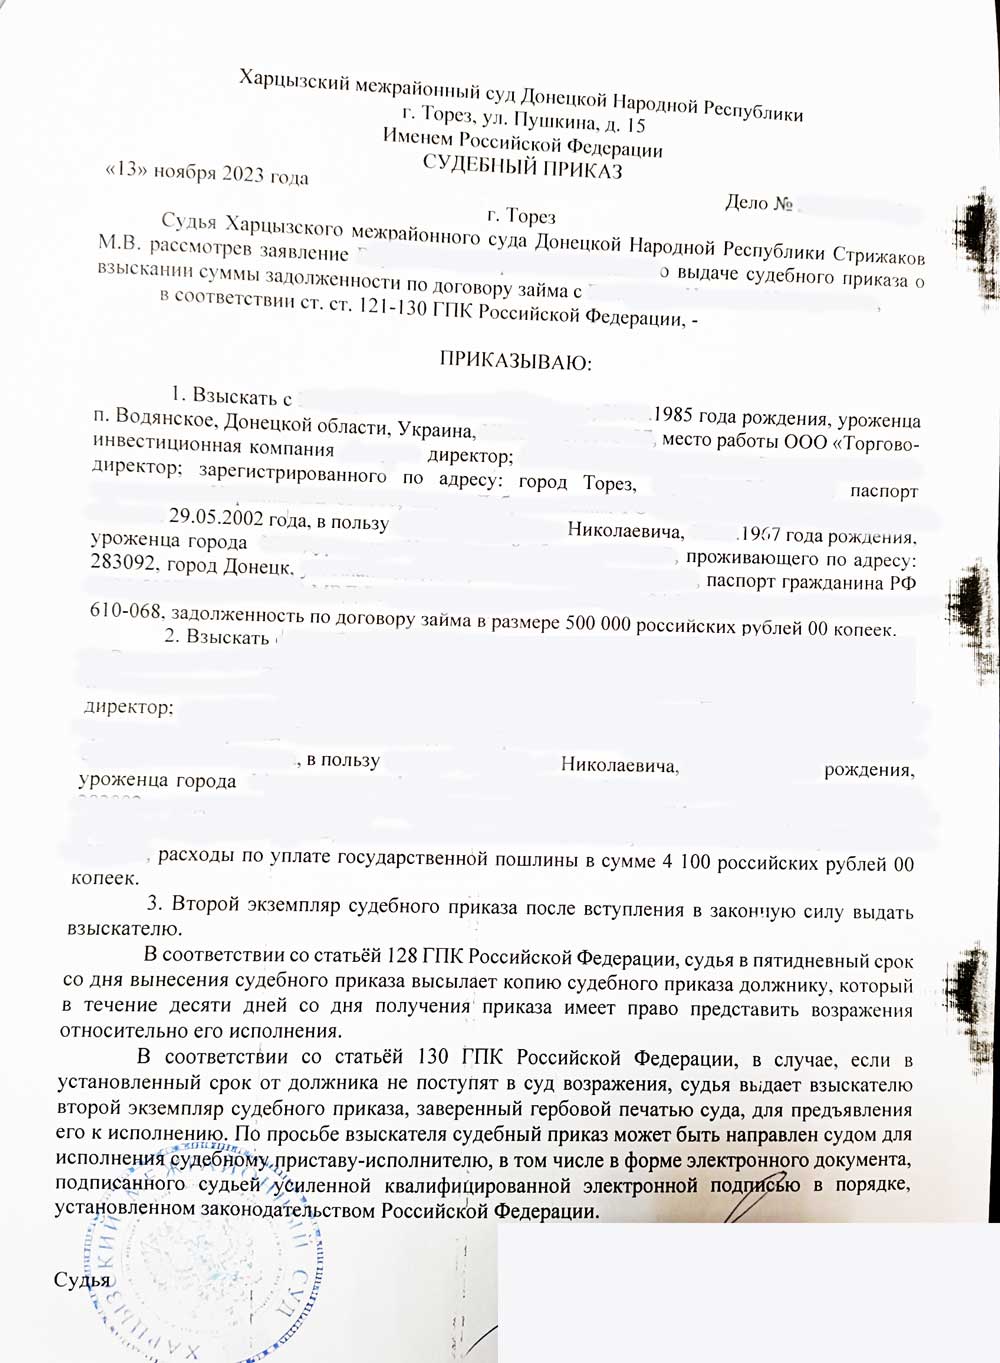 Получен приказ о взыскании долга в 500 000 рублей (удалённо)